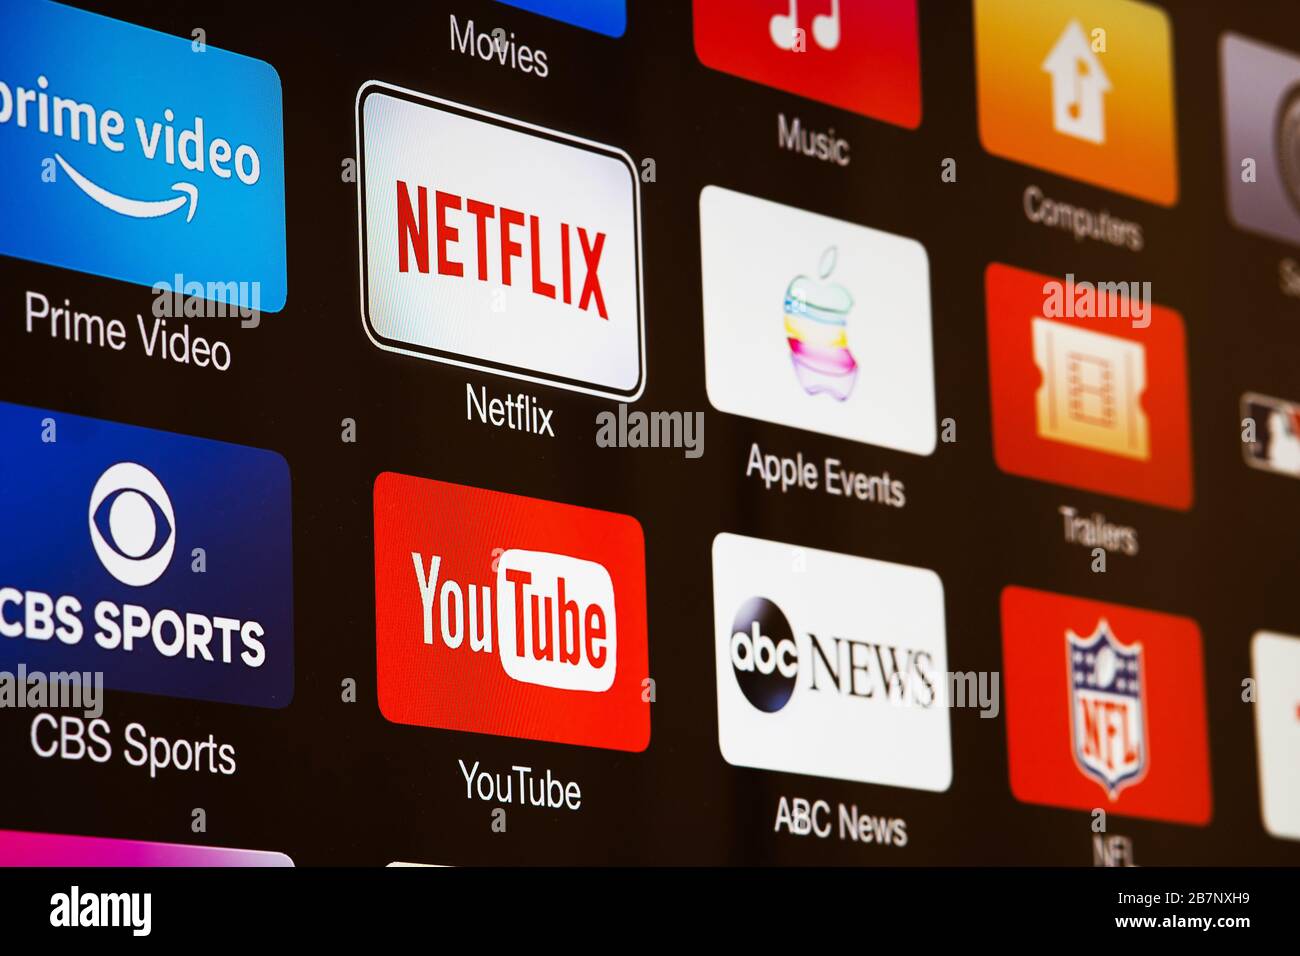 Smart TV mit Symbolen für Video-Streaming-Dienste und -Apps: YouTube, ABC News, Tastemade, UFC, NFL, Crunchyroll, Flickr und Red Bull TV. Stockfoto